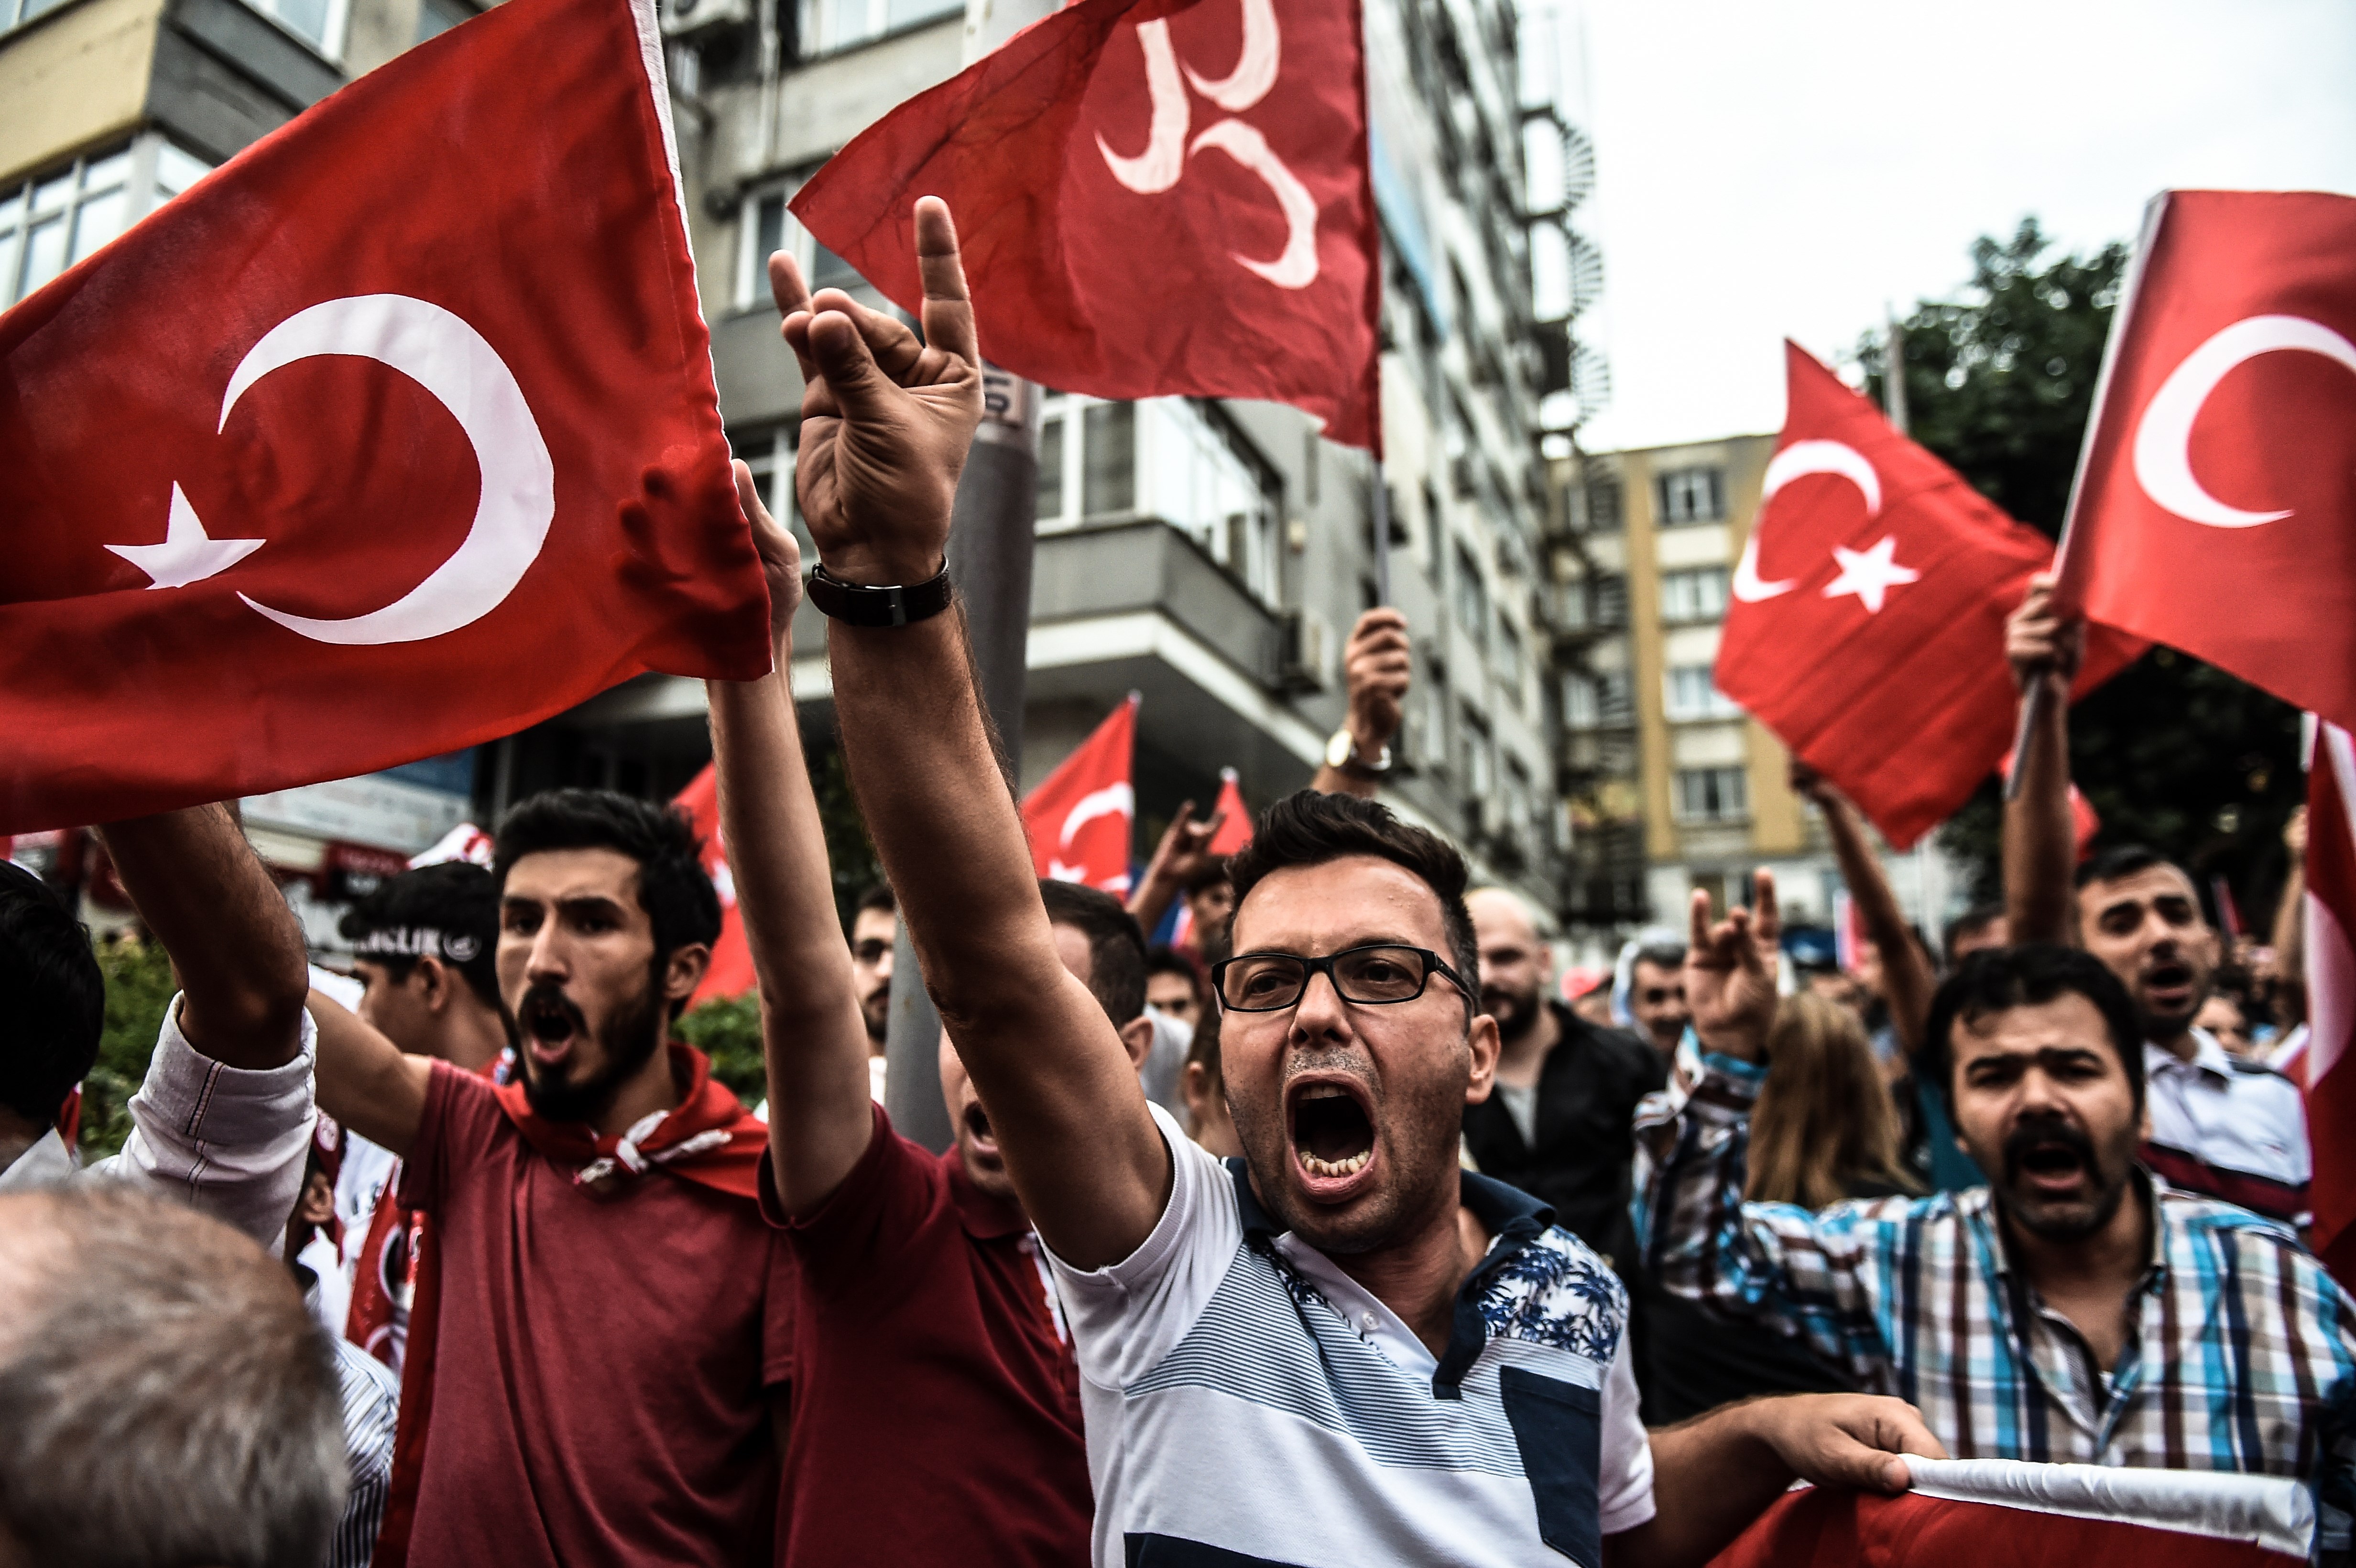 Много турков. Турецкие националисты серые волки. Турки. Турецкие националисты. Турецкий национализм.